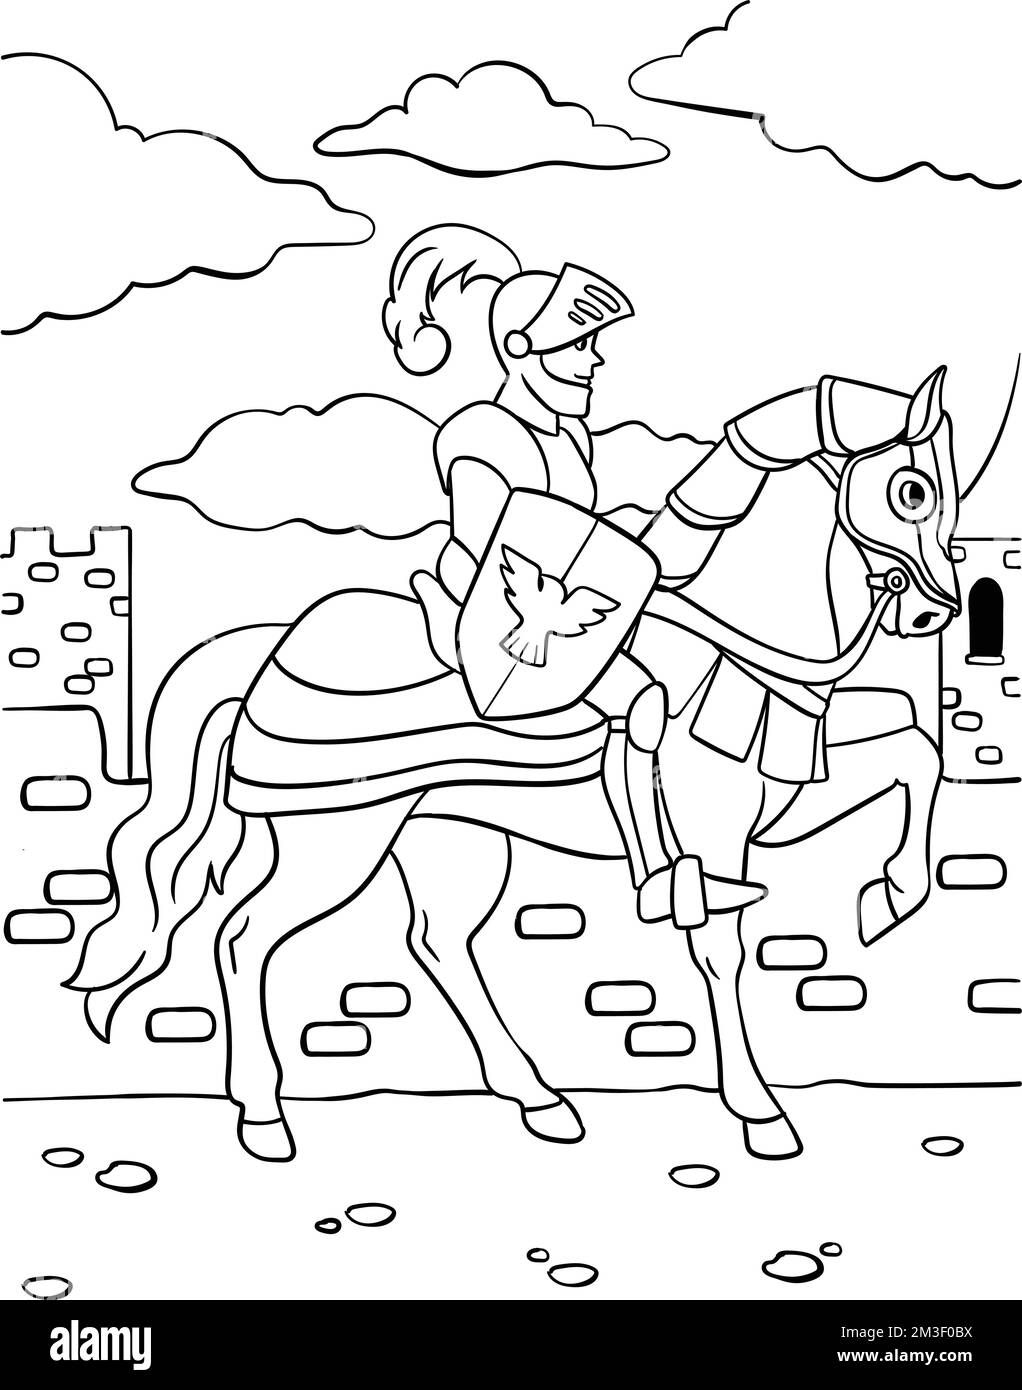 Cavaliere su una pagina da colorare di cavallo per i capretti Illustrazione Vettoriale